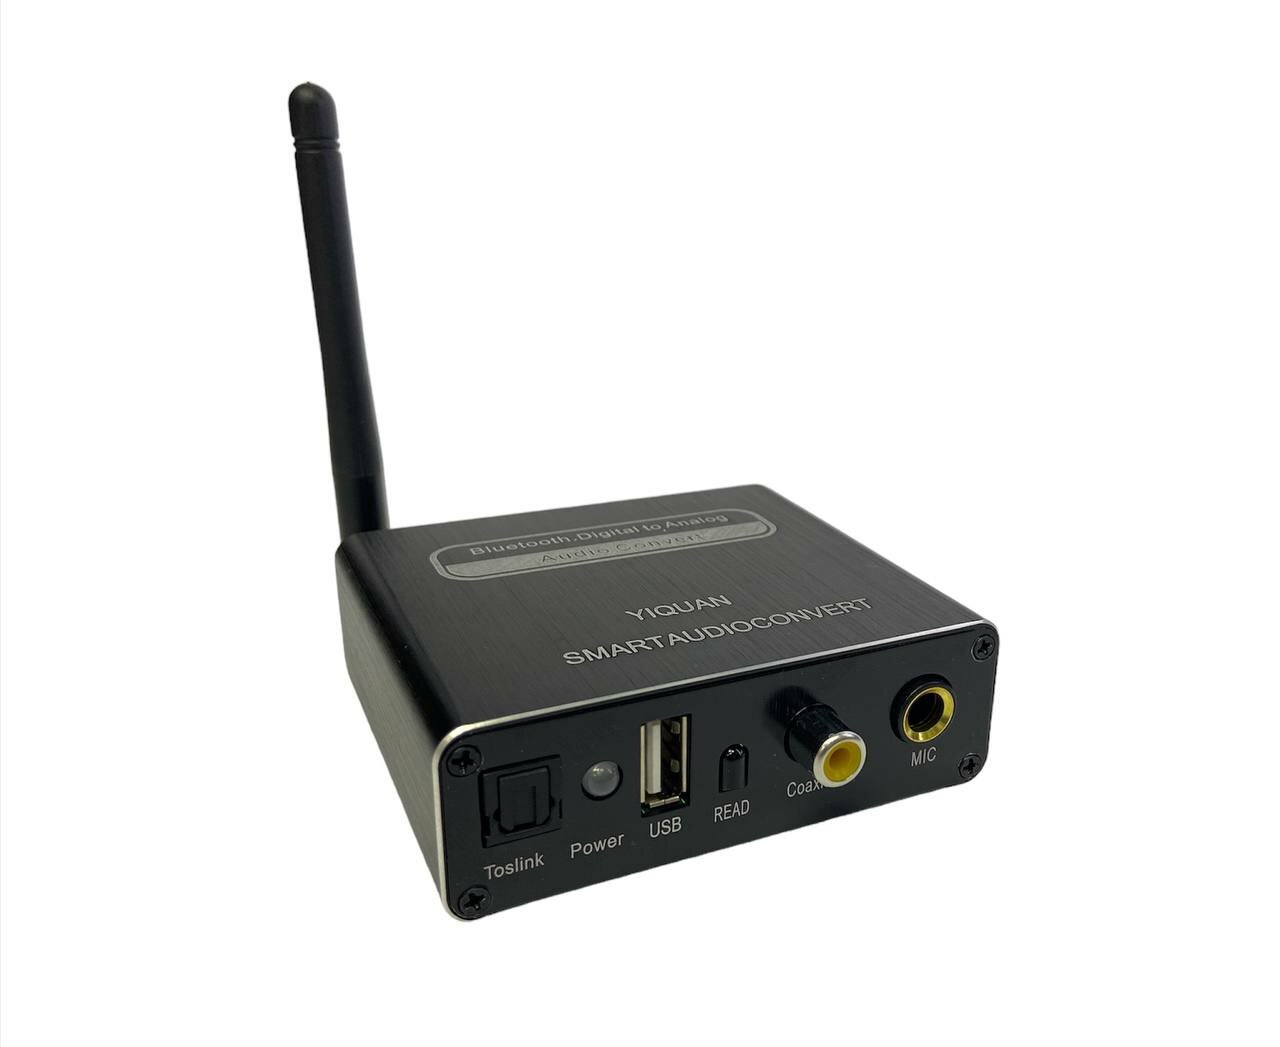 Мультимедиа плеер конвертер Bluetooth 50 USB Optical Toslink Coaxial на 35 jack RCA тюльпаны Караоке Микрофон с пультом управления громкостью